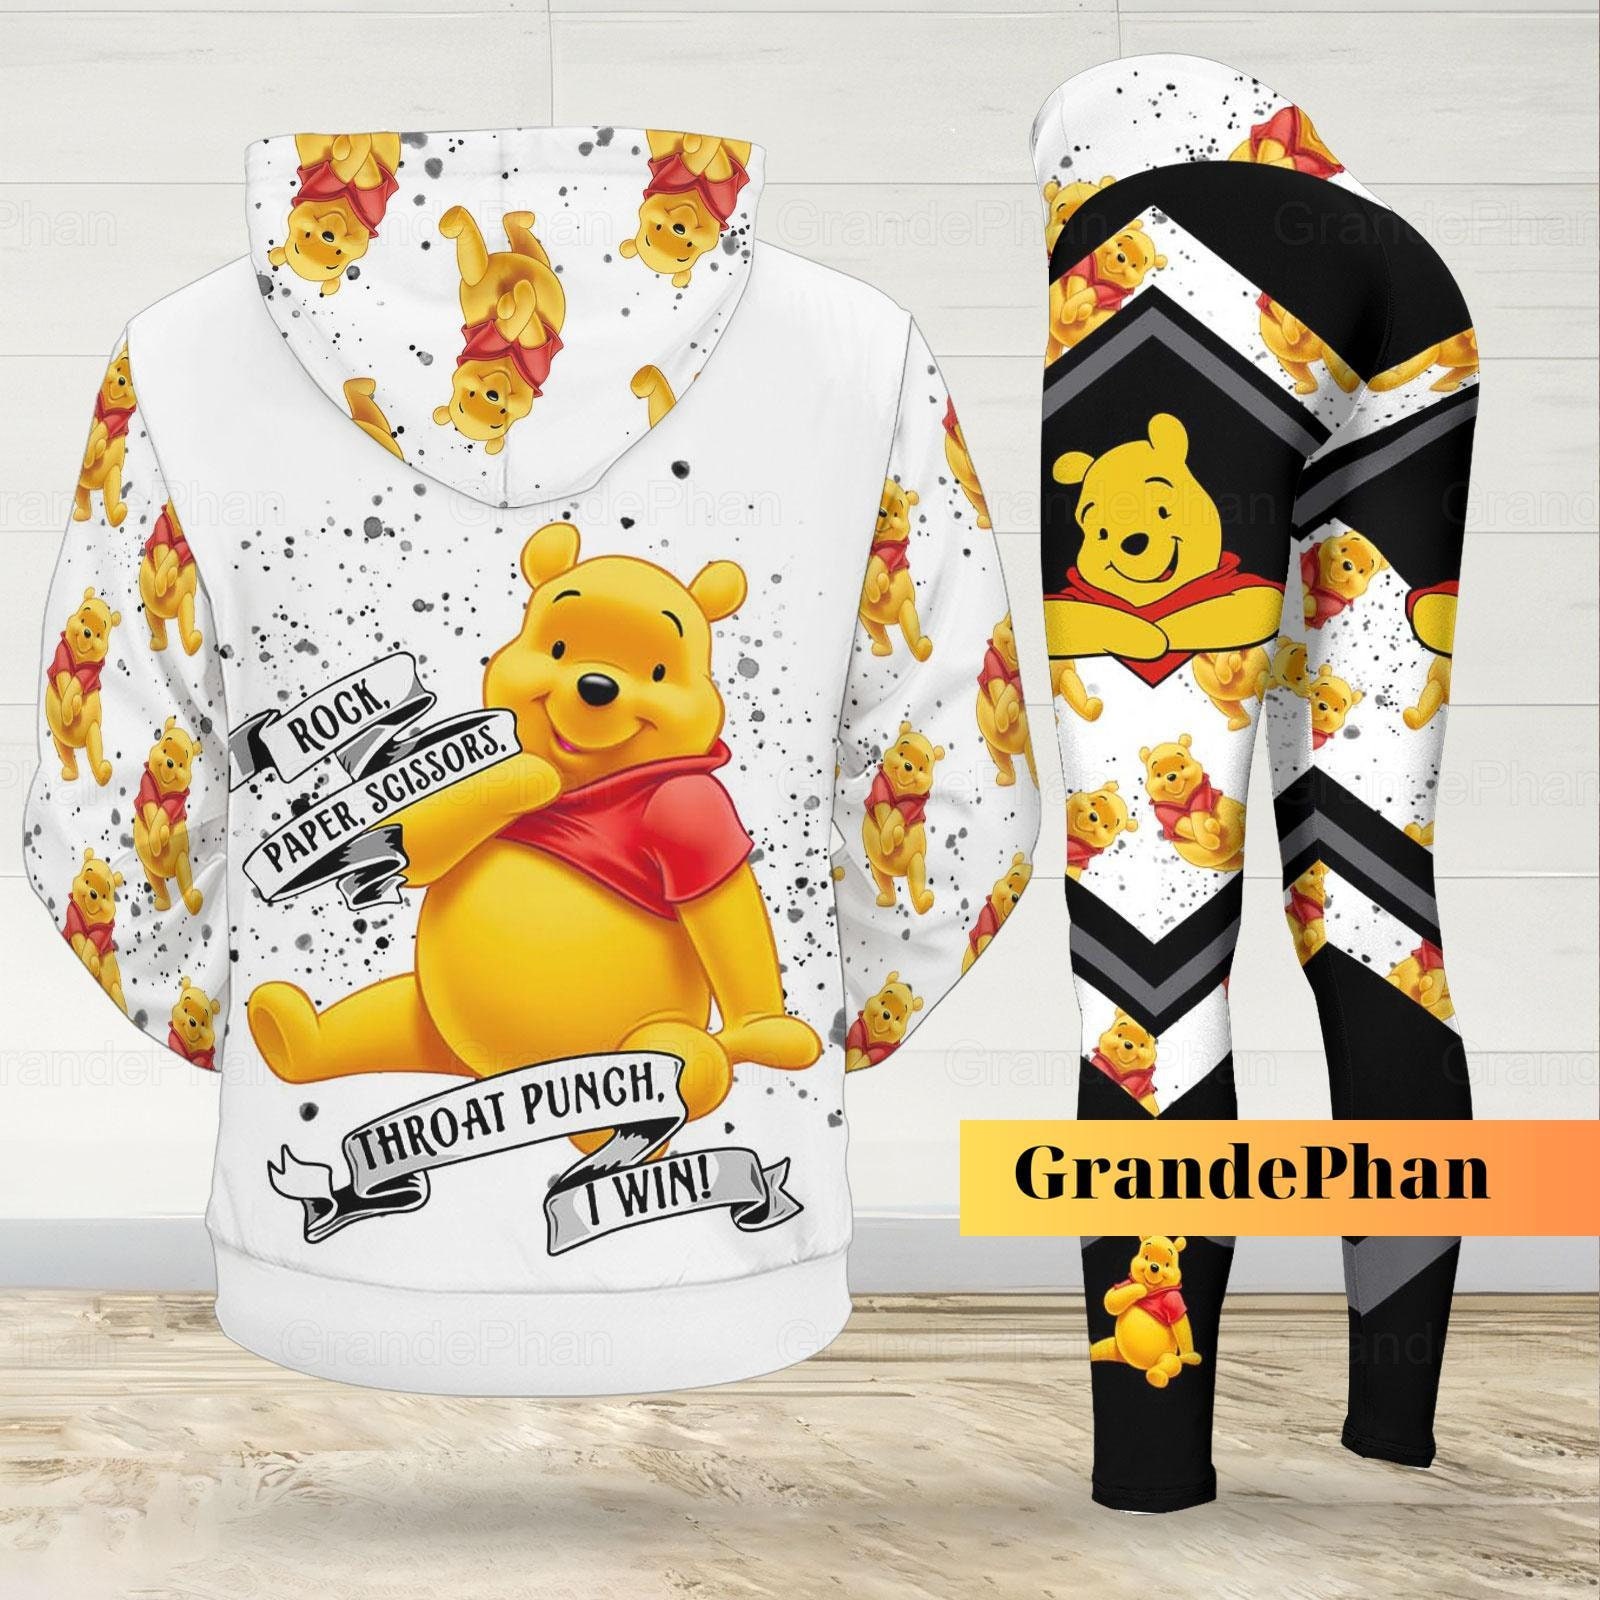 Disney Pijama Winnie The Pooh para mujer